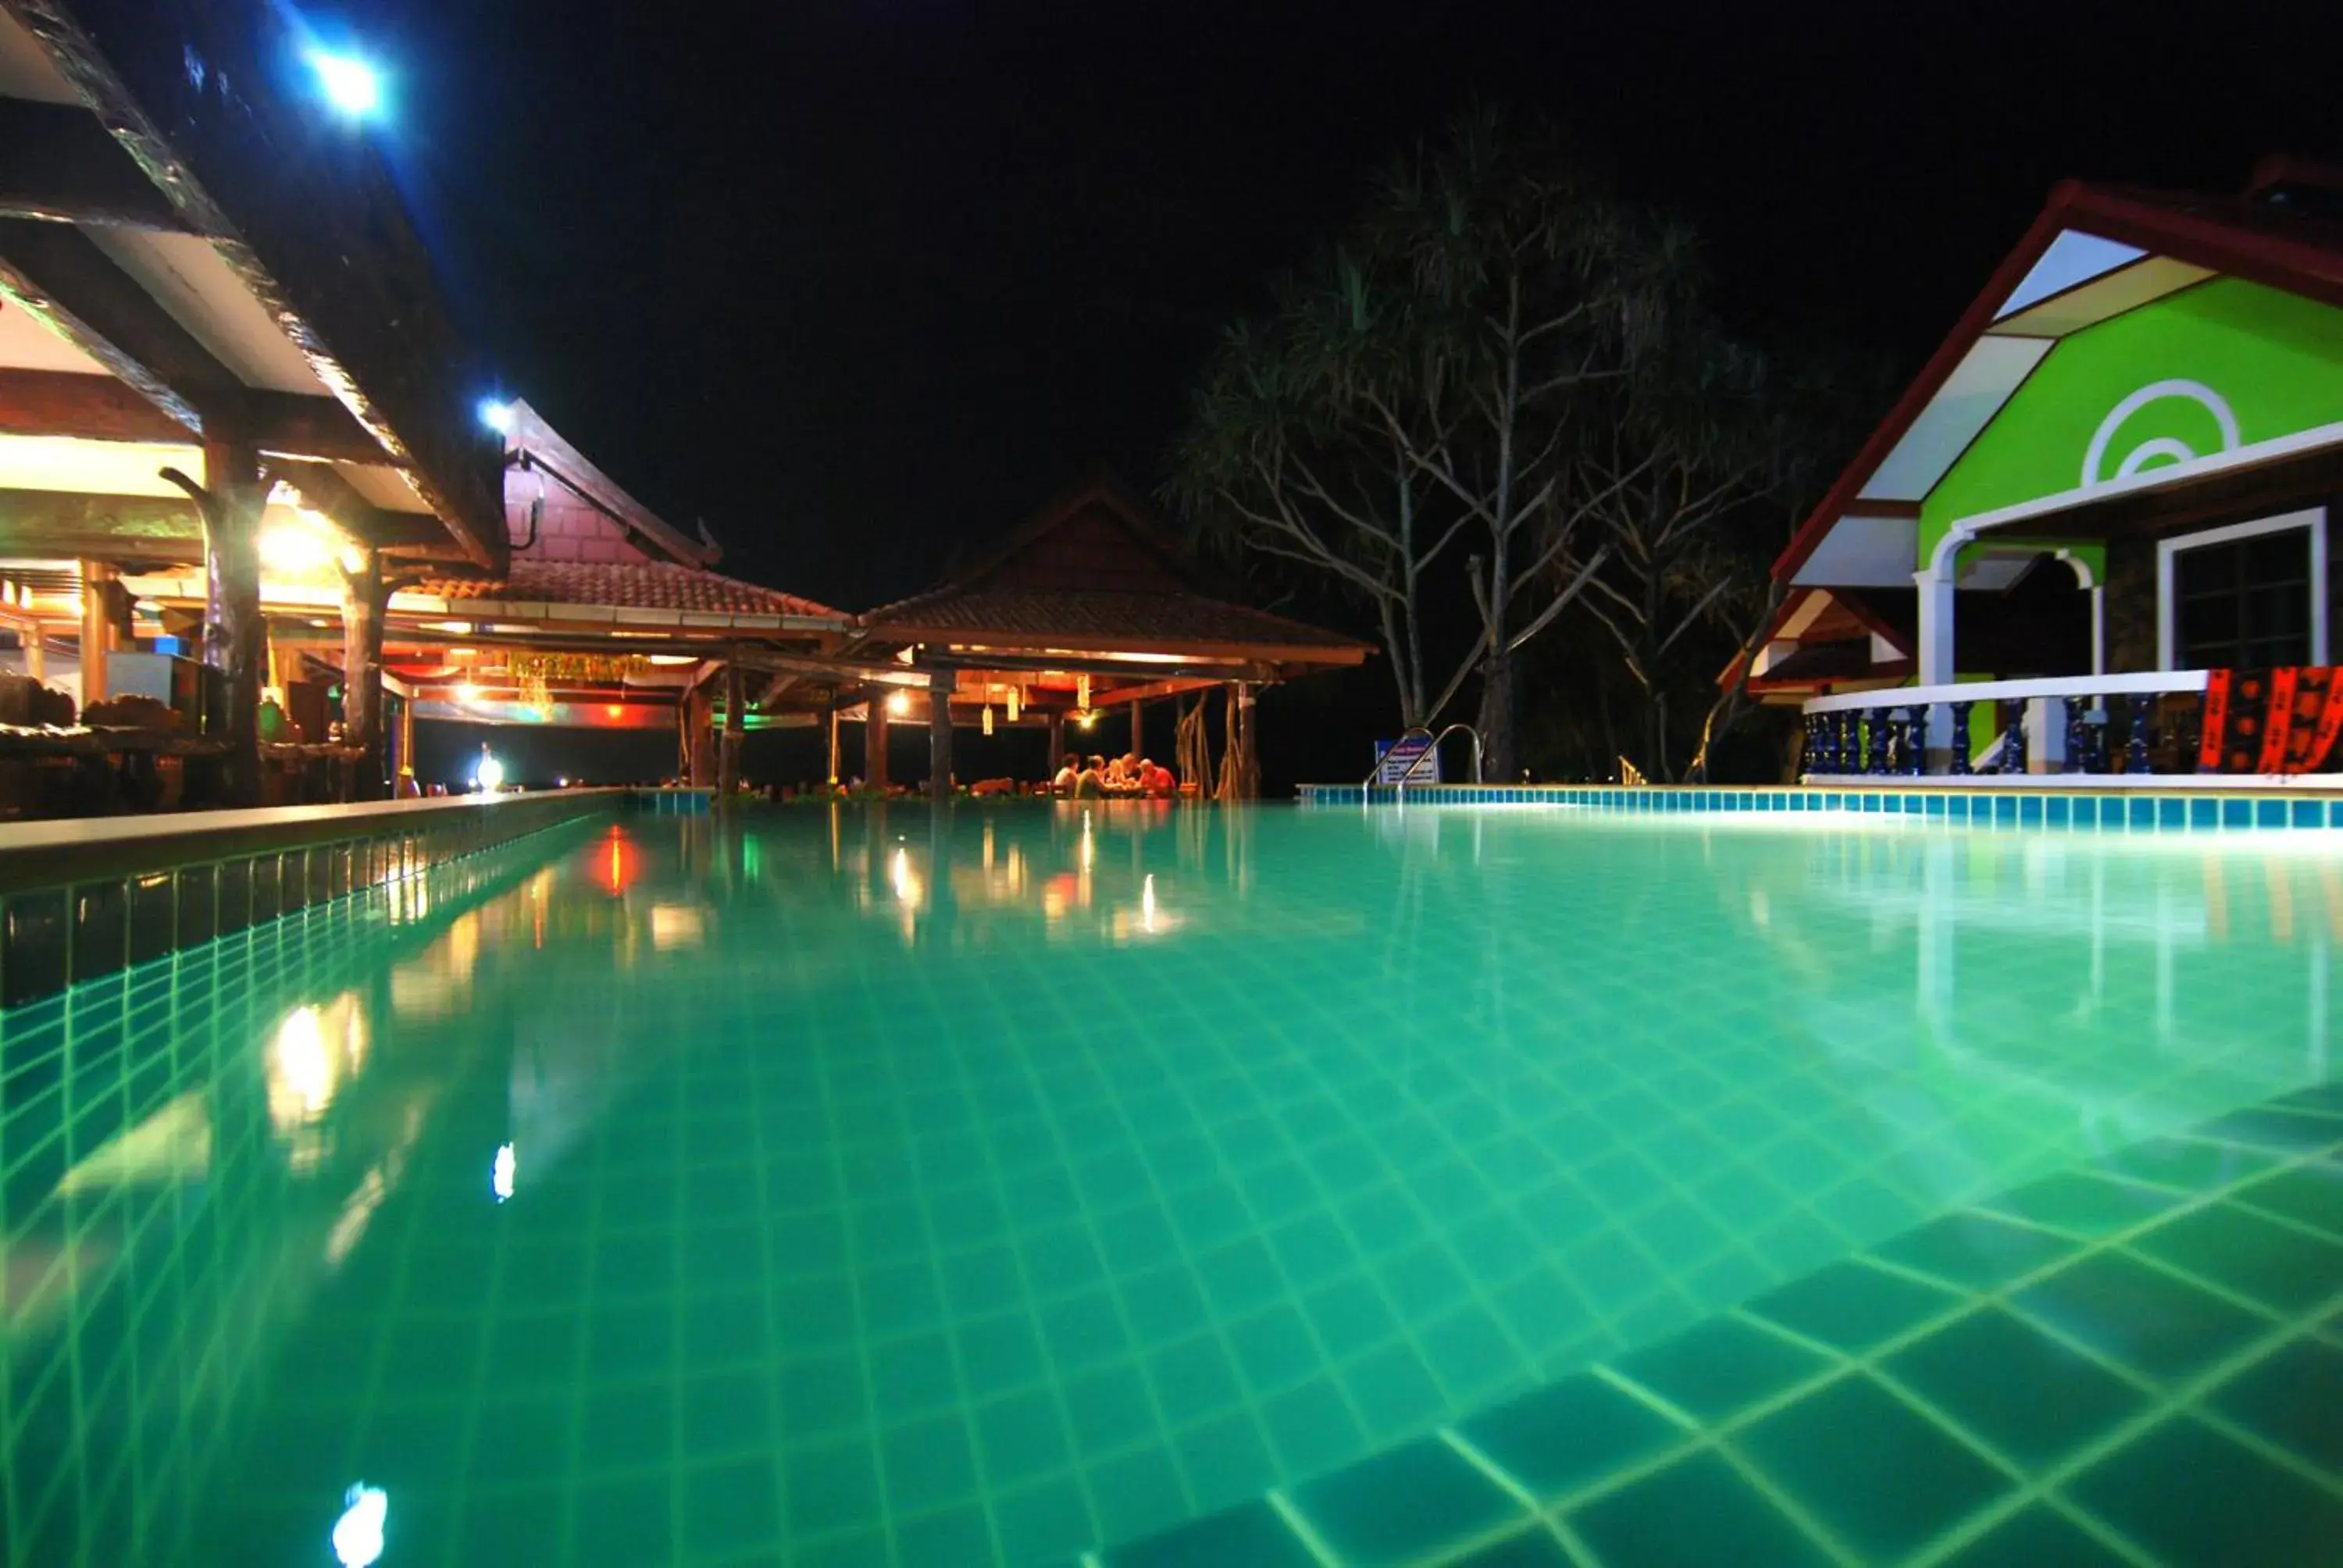 Swimming Pool in Nature Beach Resort, Koh Lanta